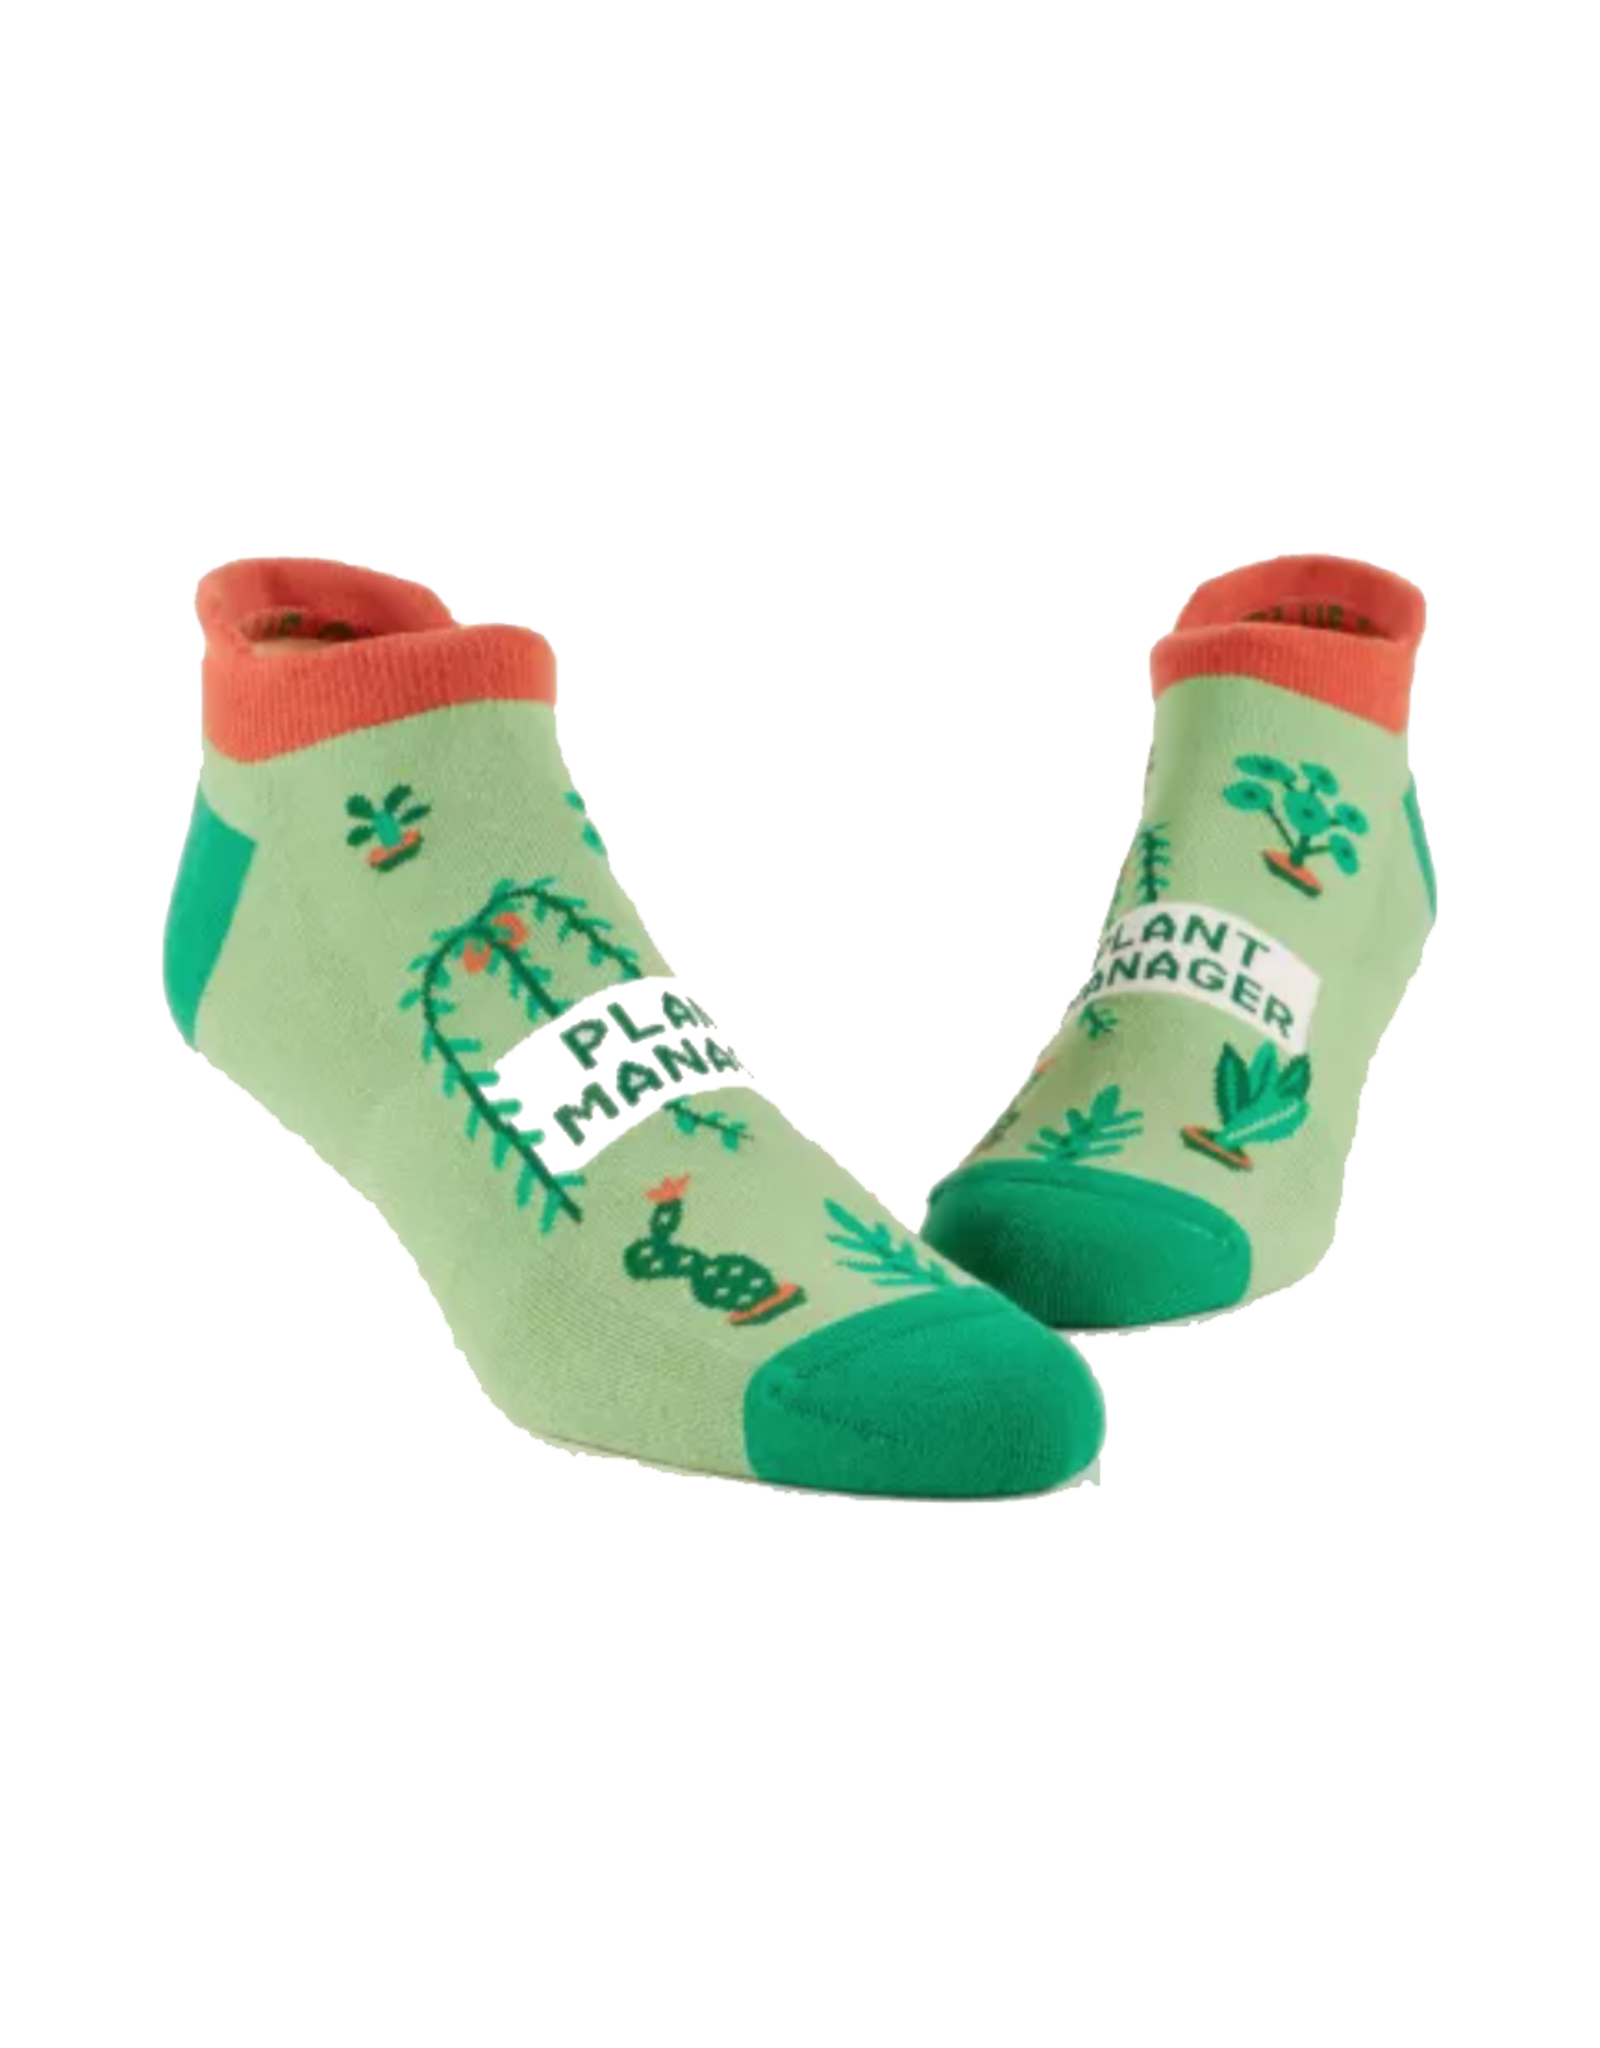 Plant Manager Sneaker Socks